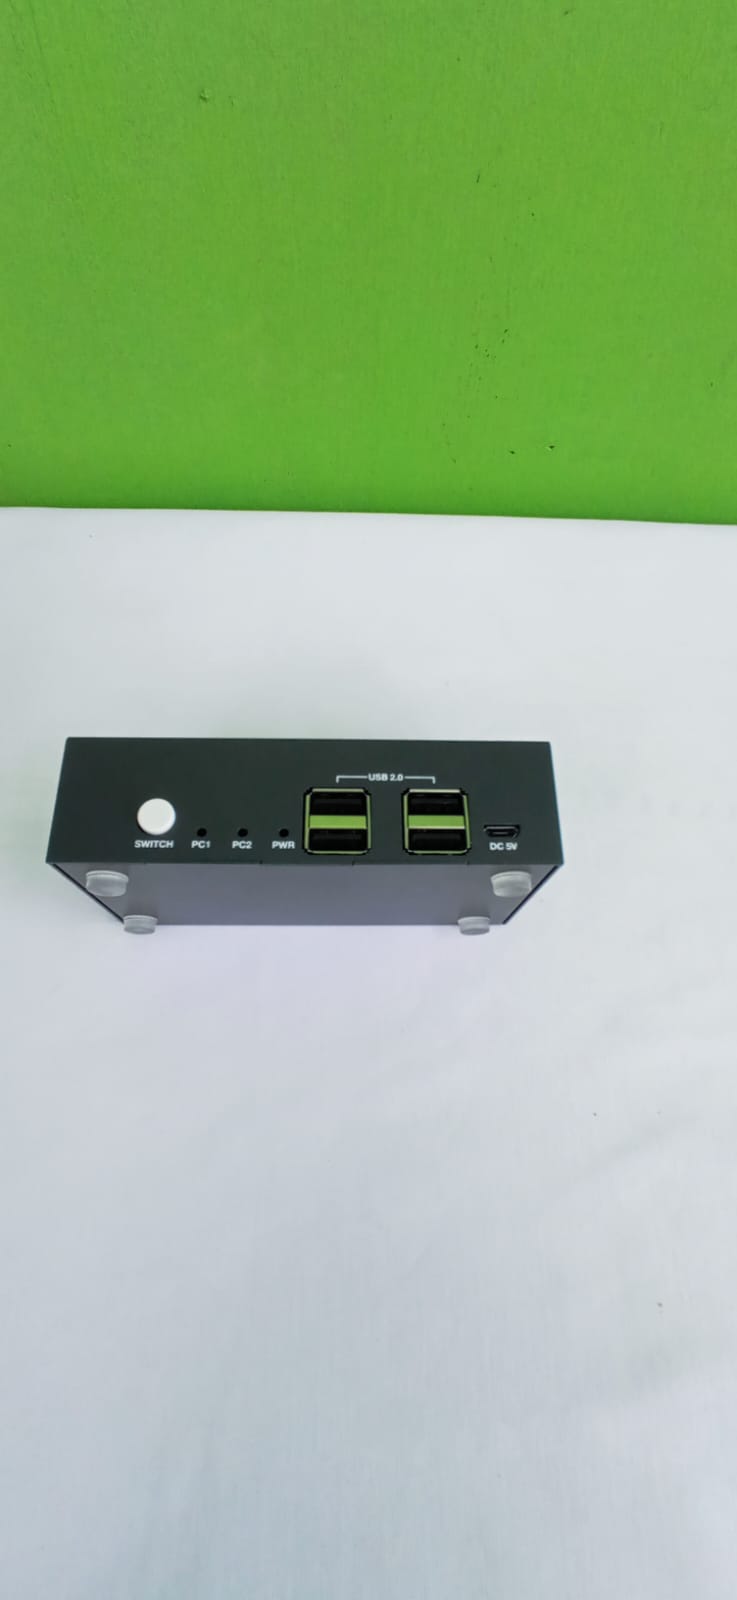 Steetek HDMI KVM Switch Dual Monitors 2 Port 4K @ 30Hz, KVM Switch 2 számítógép 2 monitor kiterjesztett kijelzője, Dual Monitor KVM by Hotkey Switching 4 HDMI és 2 USB kábel a szállítási terjedelem tartalmazza